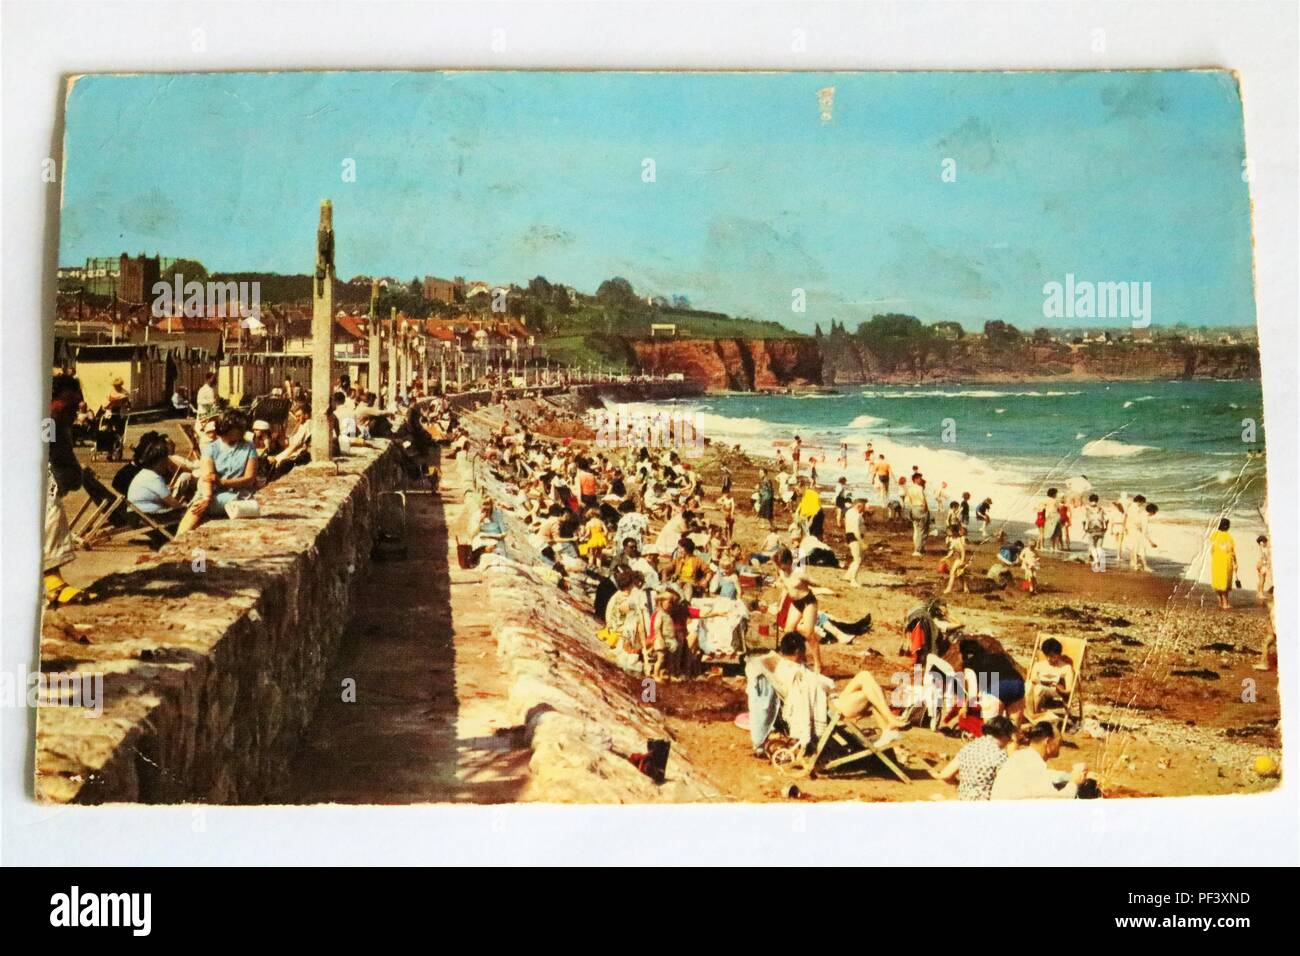 Au début de la plage de carte postale de couleur, Preston, Paignton, Devon, UK montrant une longue plage avec les gens de soleil Banque D'Images